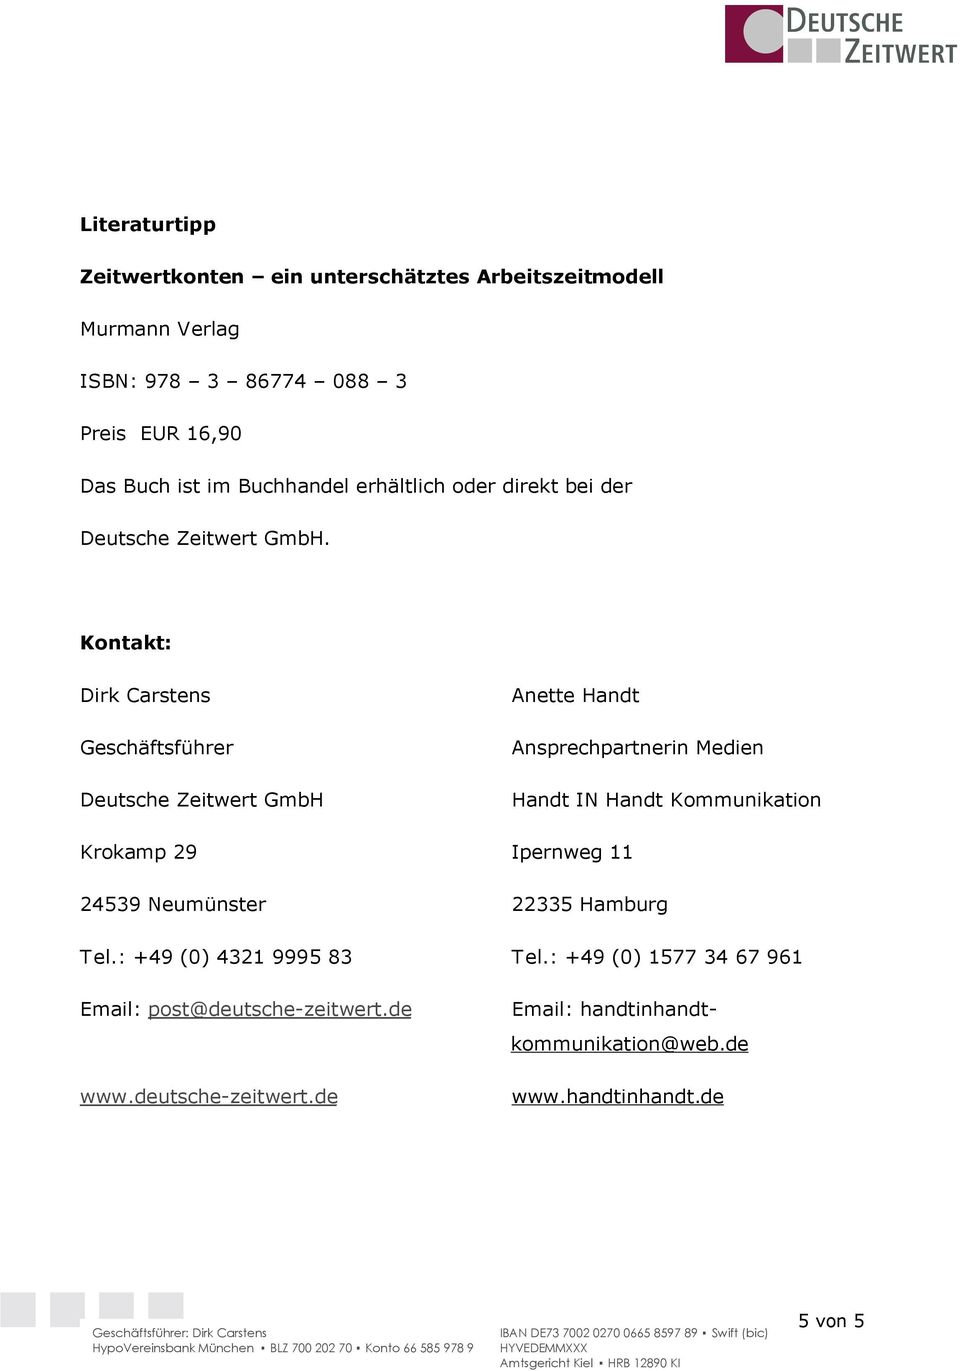 Kontakt: Dirk Carstens Geschäftsführer Deutsche Zeitwert GmbH Anette Handt Ansprechpartnerin Medien Handt IN Handt Kommunikation Krokamp 29